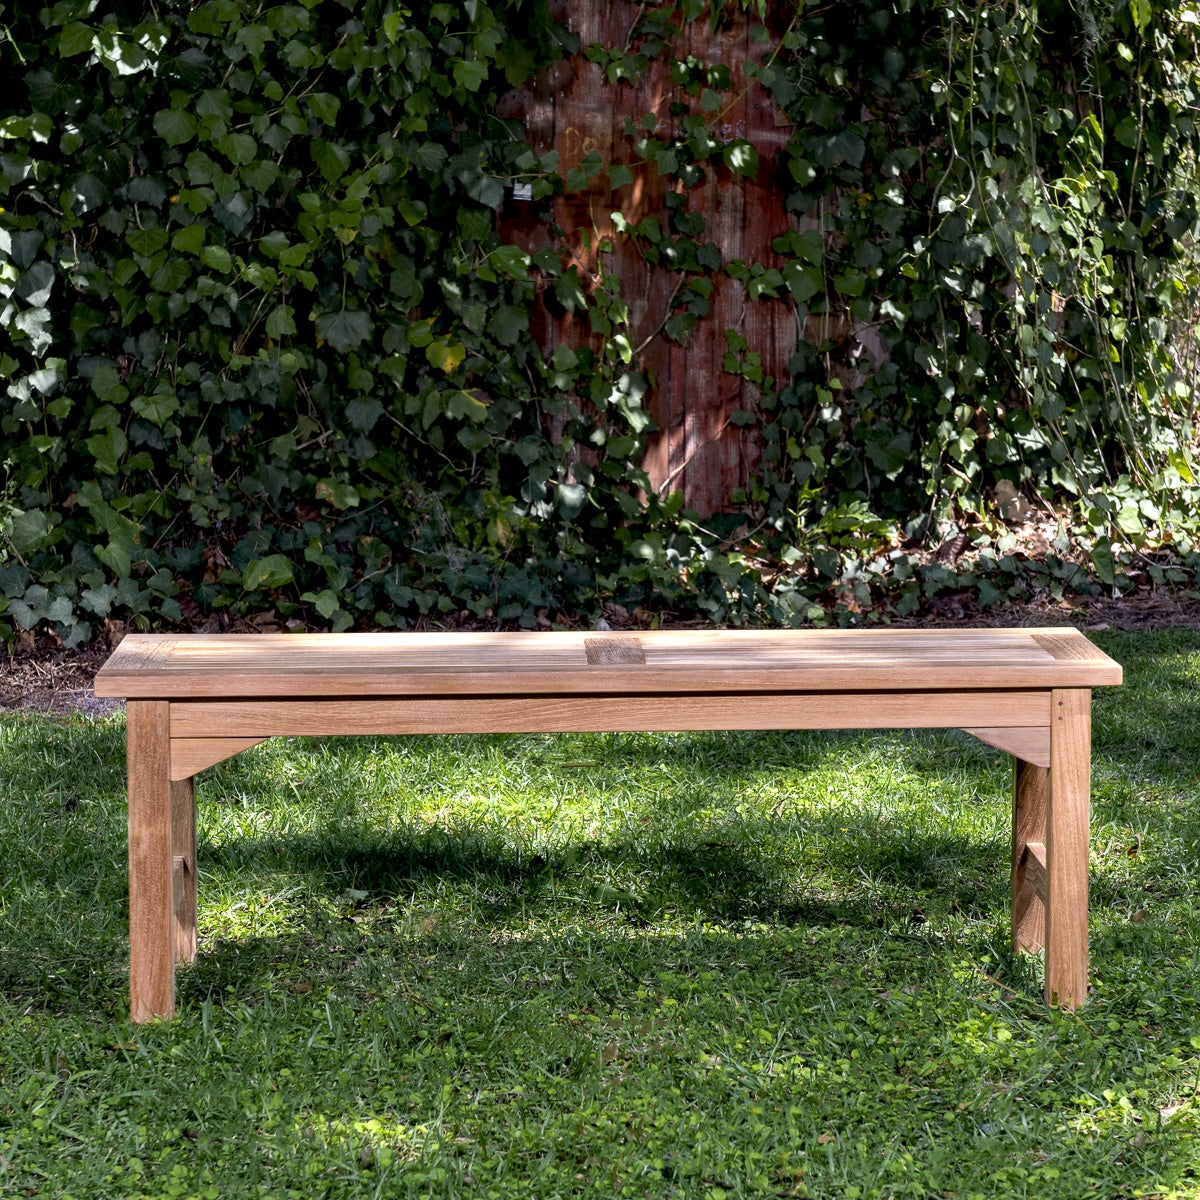 Westminster Teak - 4 ft Veranda Teak Backless Bench Perfect for Spa or Garden - 13940